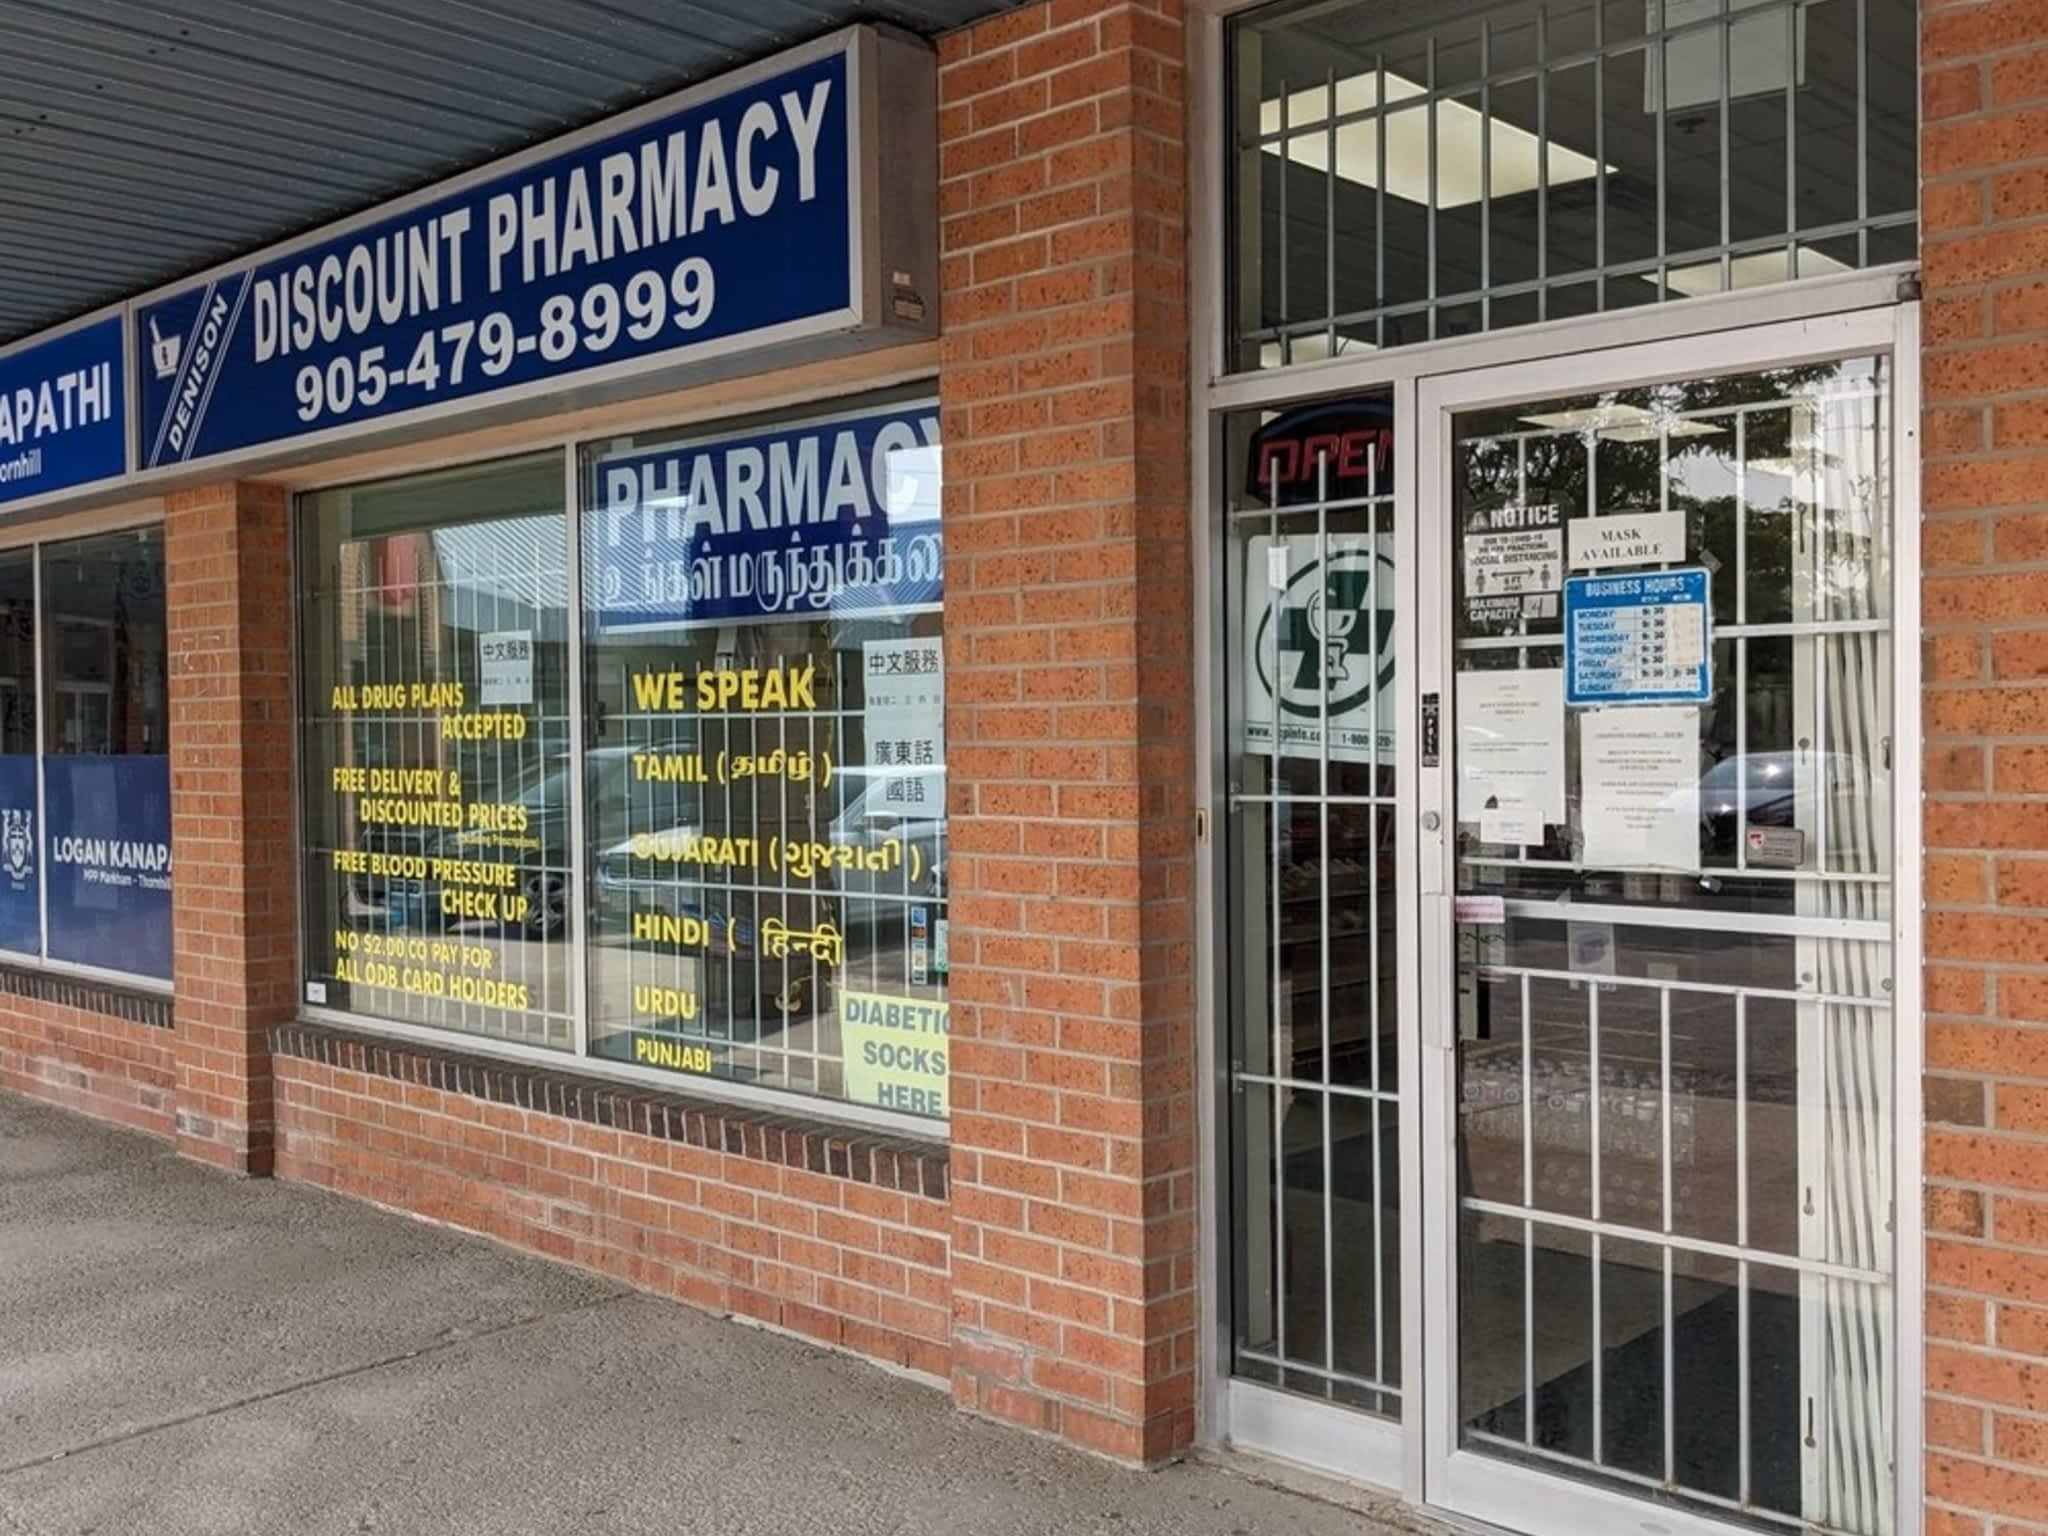 photo Denison Discount Pharmacy